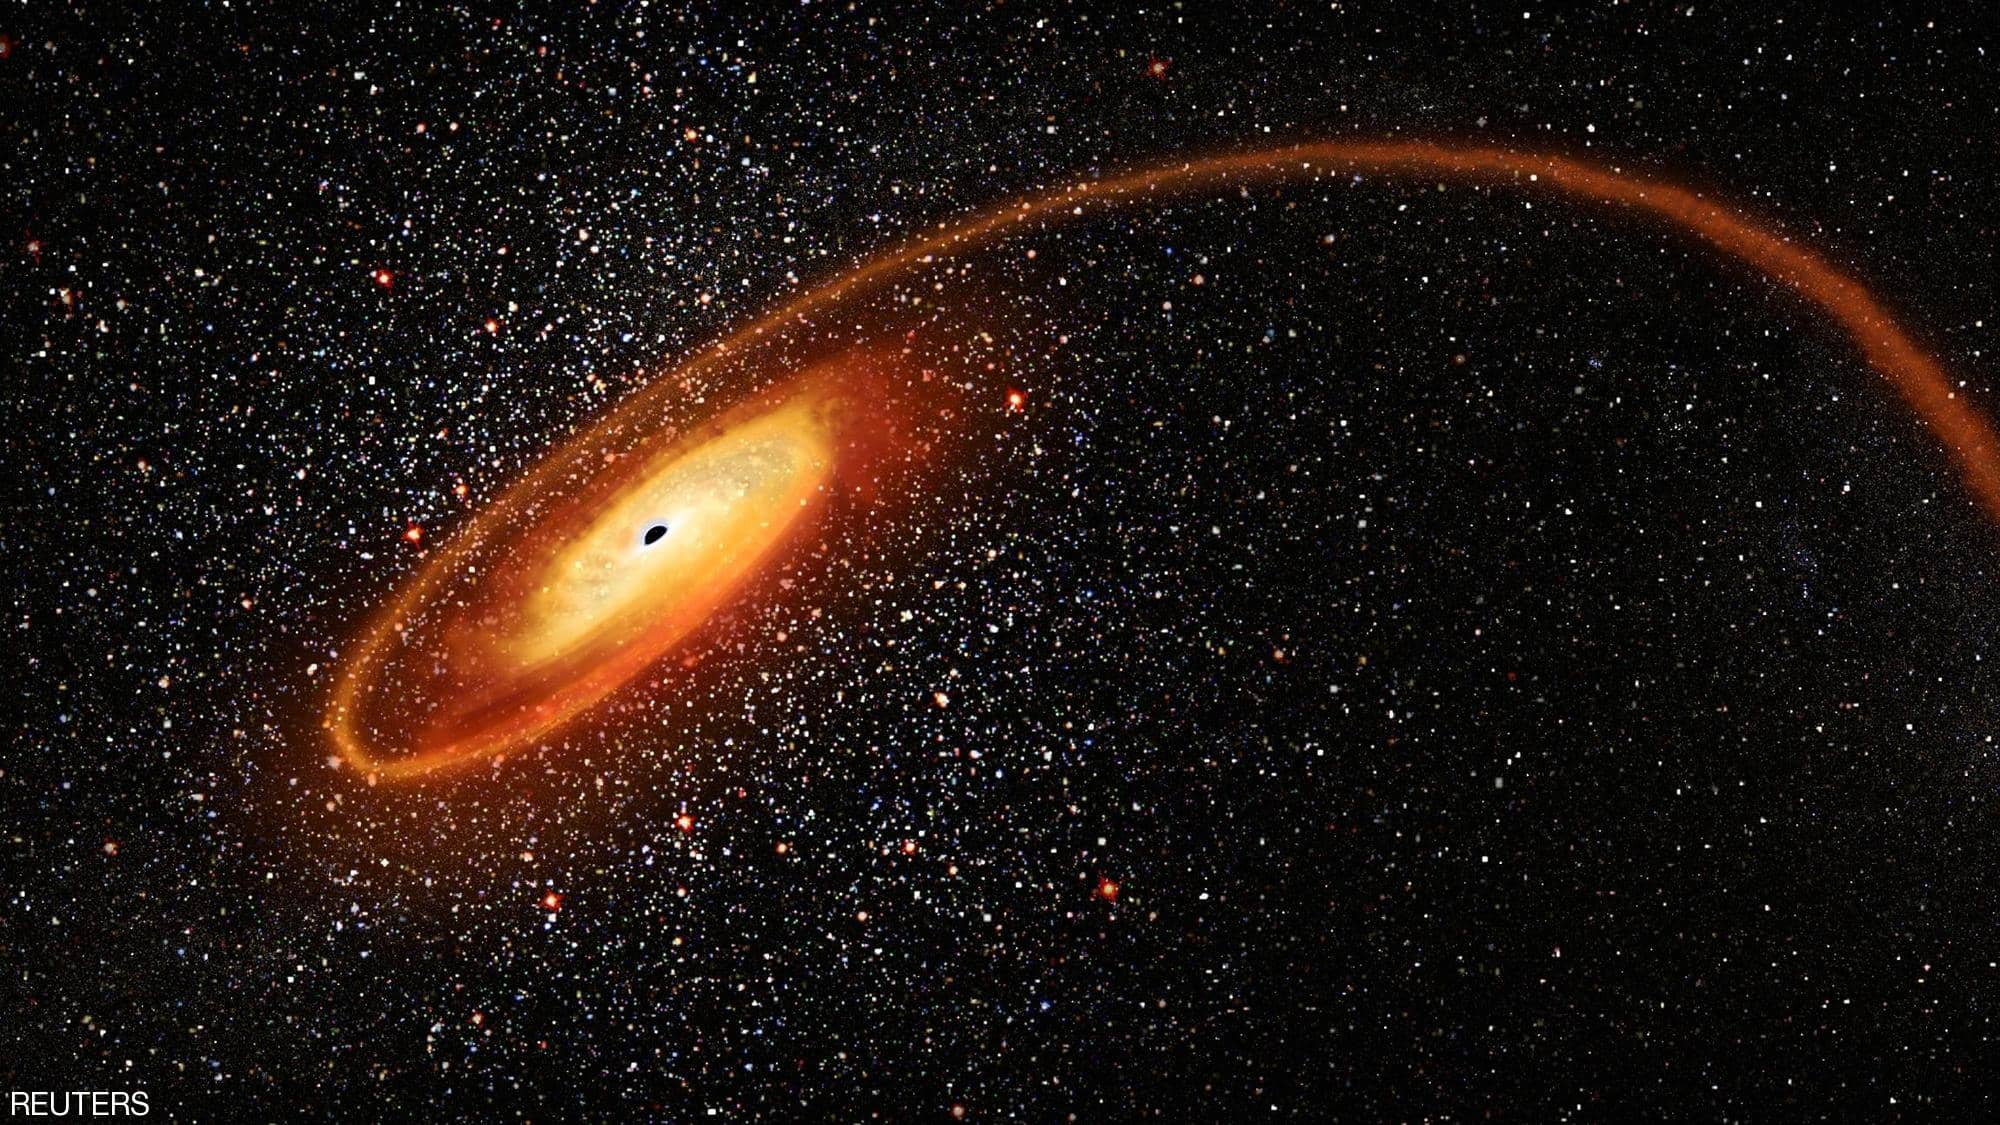 العلماء يرصدون "رقصة مدمرة" في الفضاء بين ثقبين أسودين